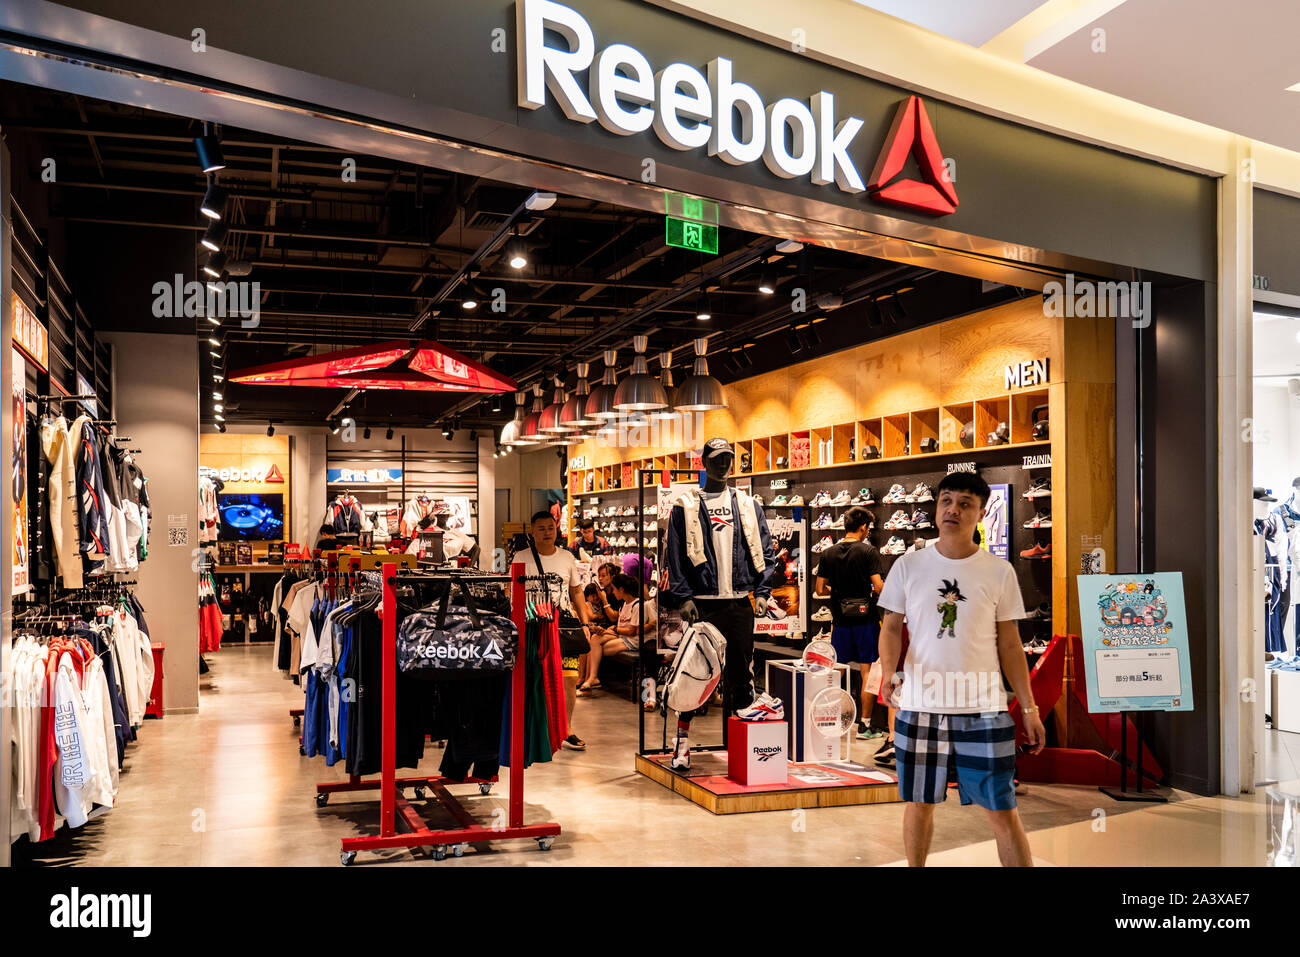 Fußgängerzone Vergangenheit eine englische Schuhe und Bekleidung Firma,  Reebok store in Shenzhen Stockfotografie - Alamy